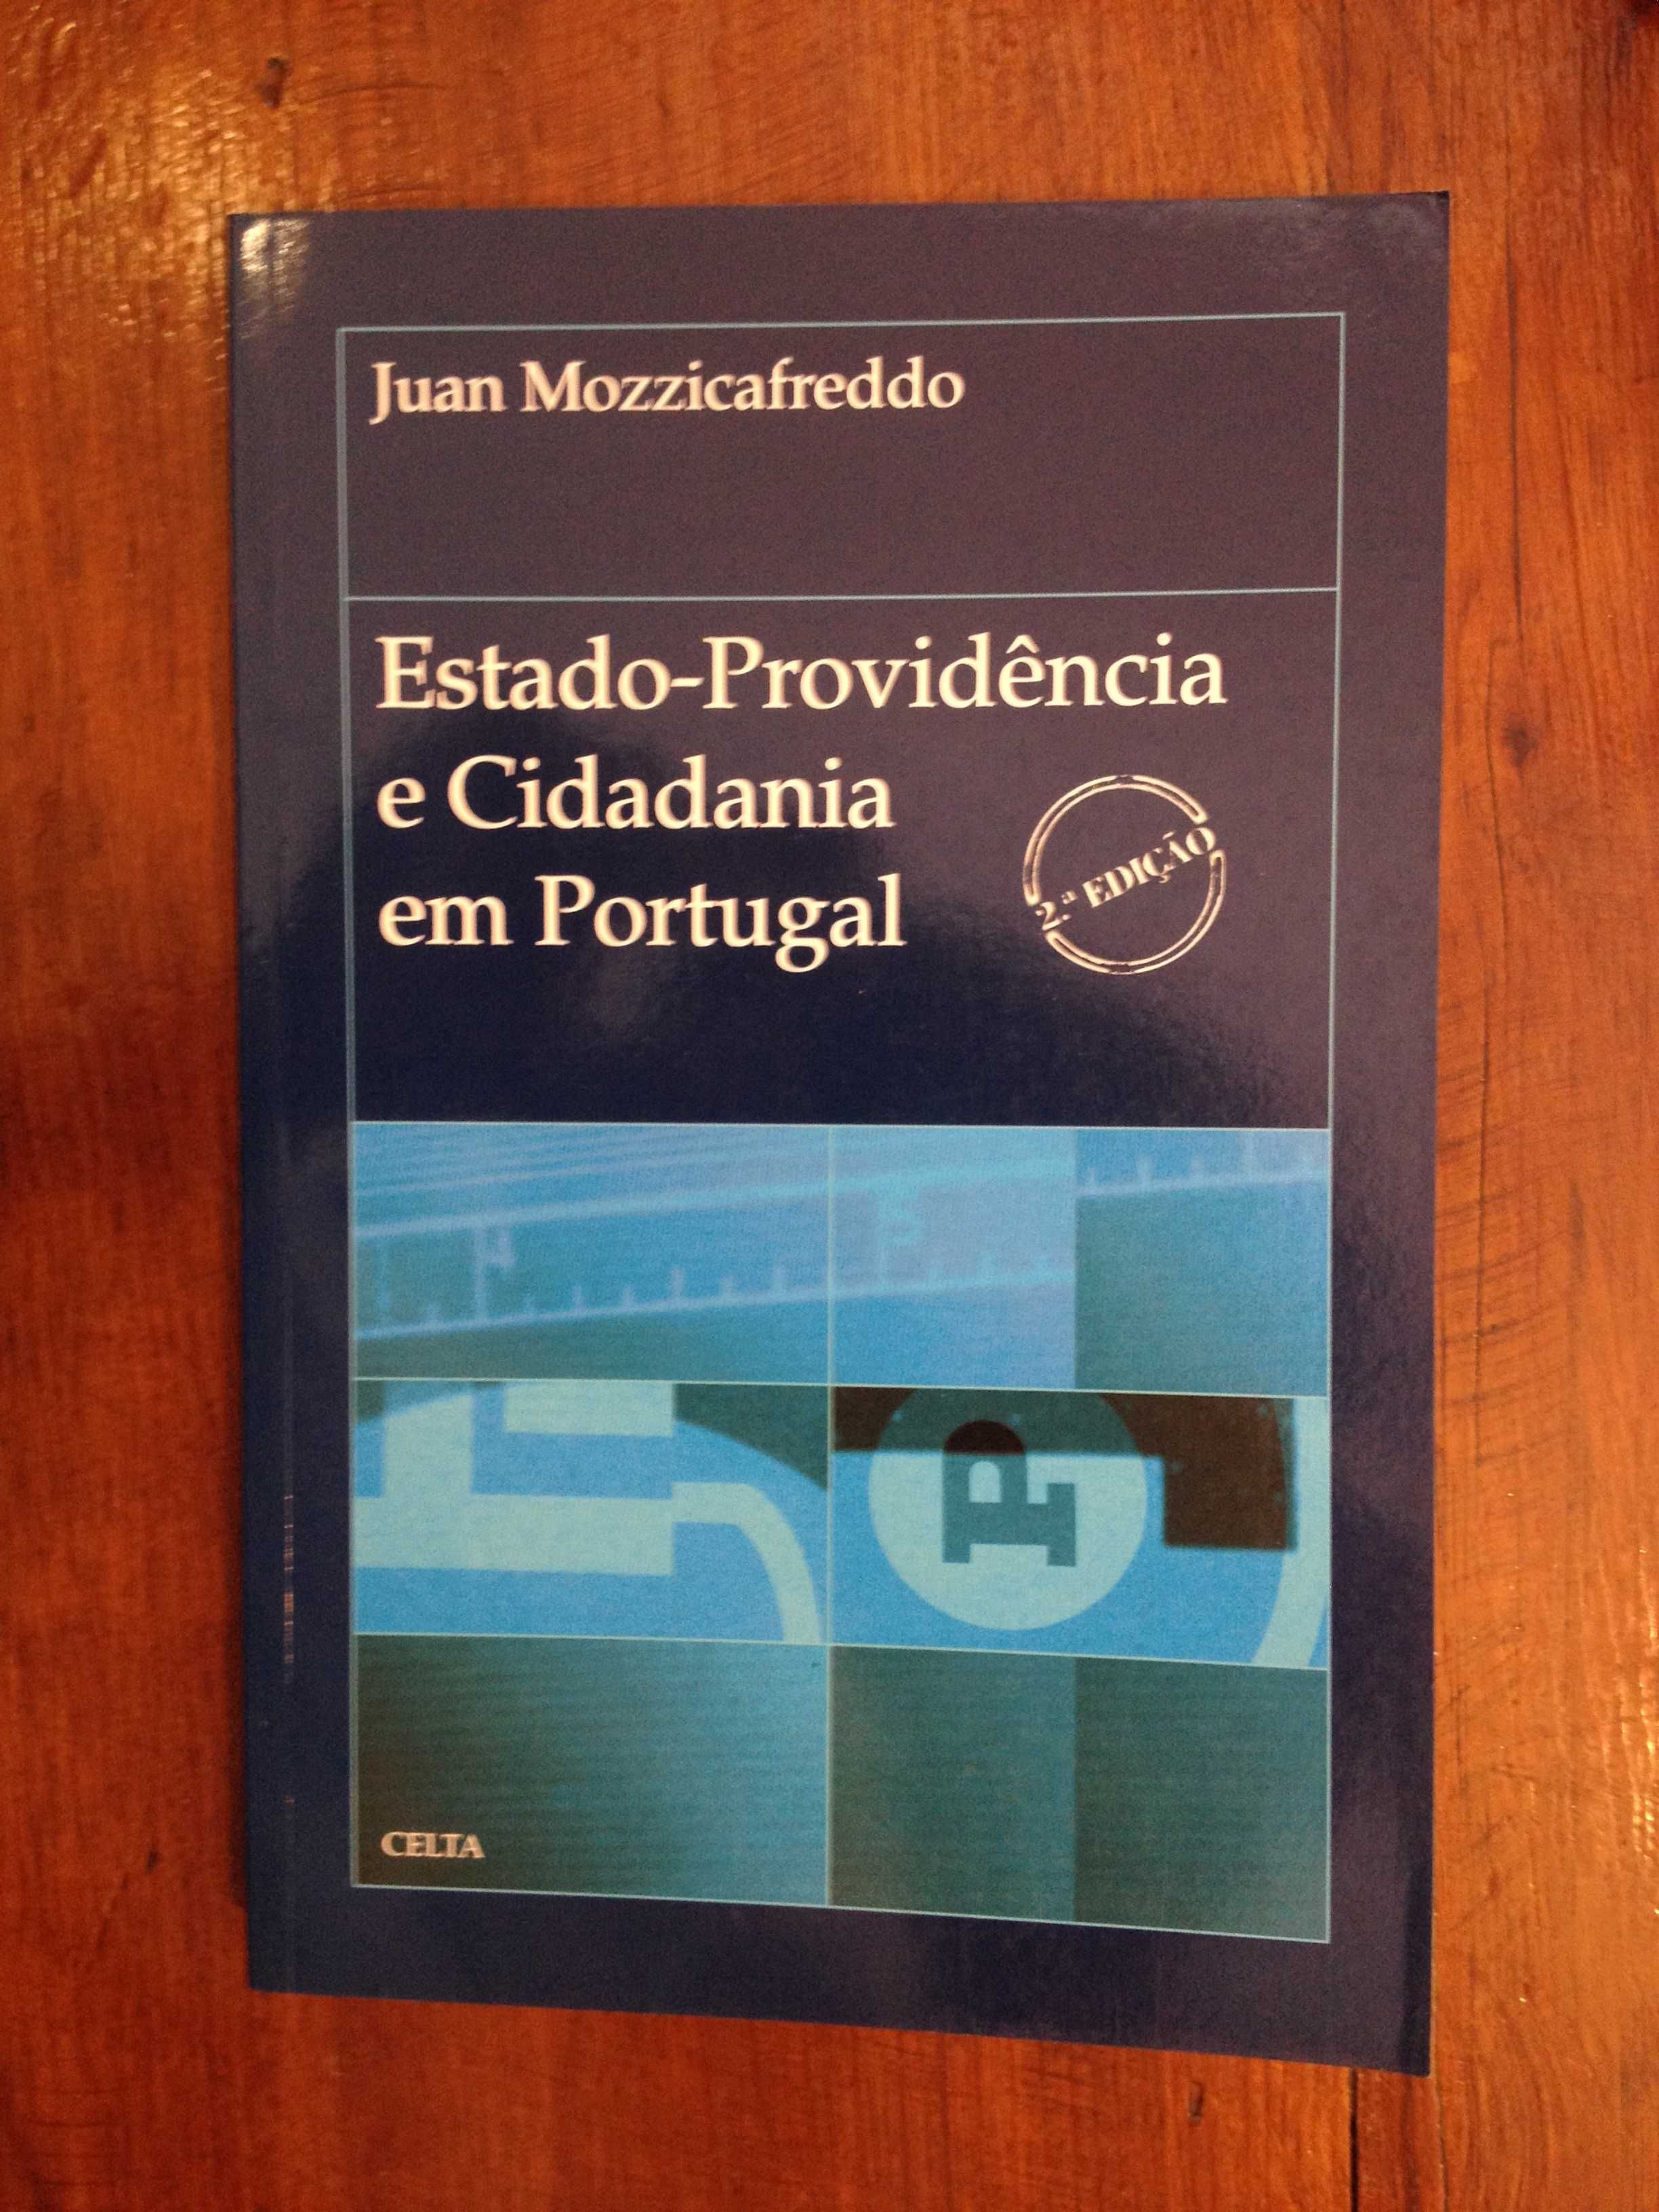 Juan Mozzicafreddo - Estado-providência e Cidadania em Portugal